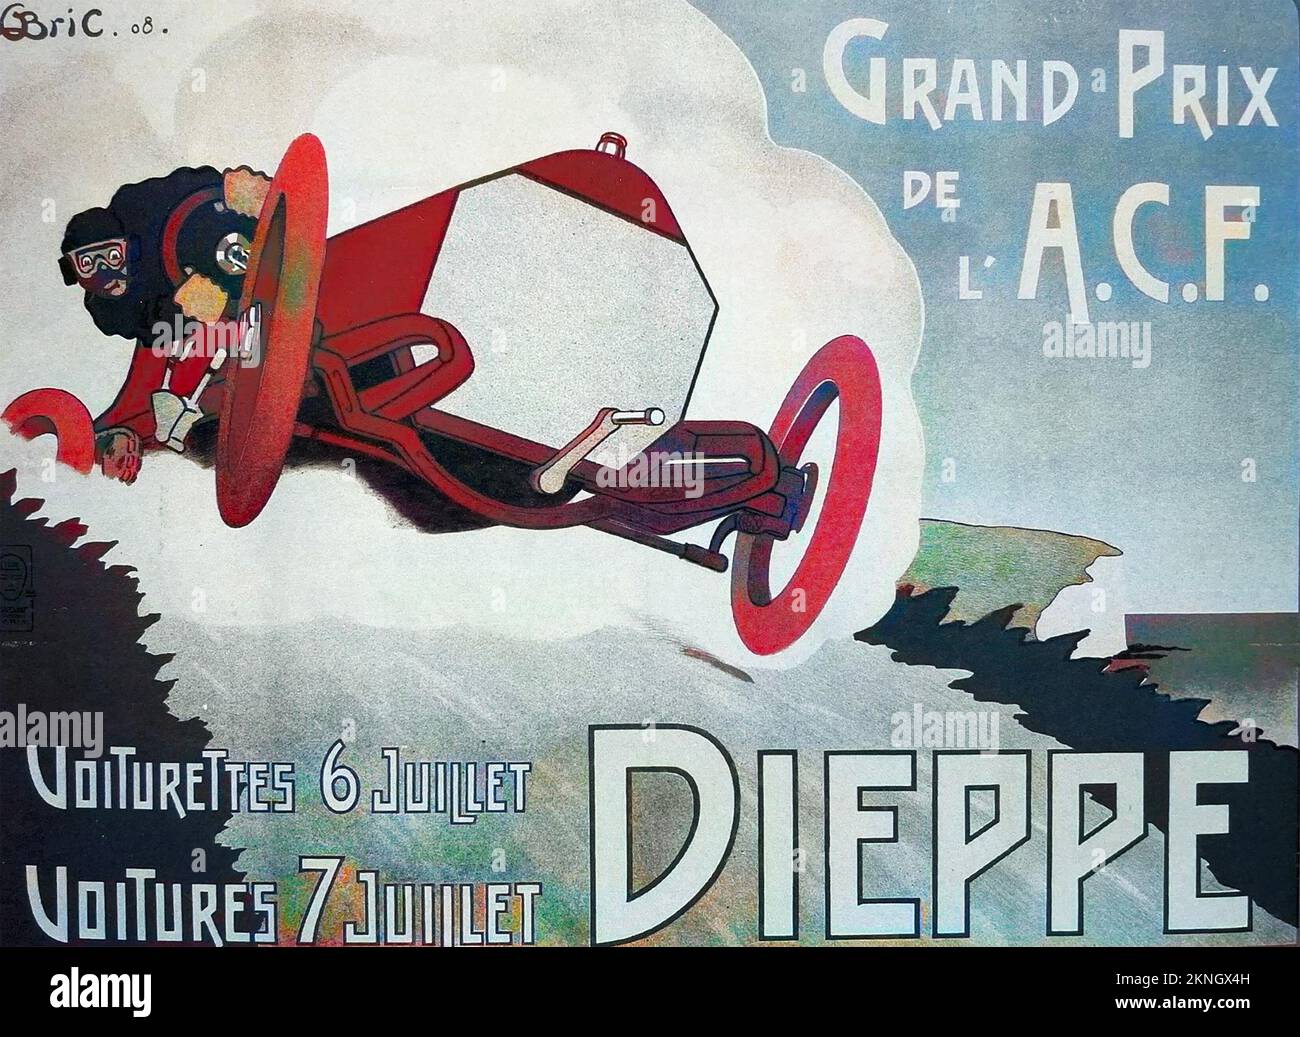 DIEPPE GRAND PRIX 1908 nonostante l'umorismo in questa immagine nella gara vera e propria, un pilota e il suo meccanico sono morti quando la loro vettura ribaltata - i primi morti nella storia del Gran Premio. Foto Stock